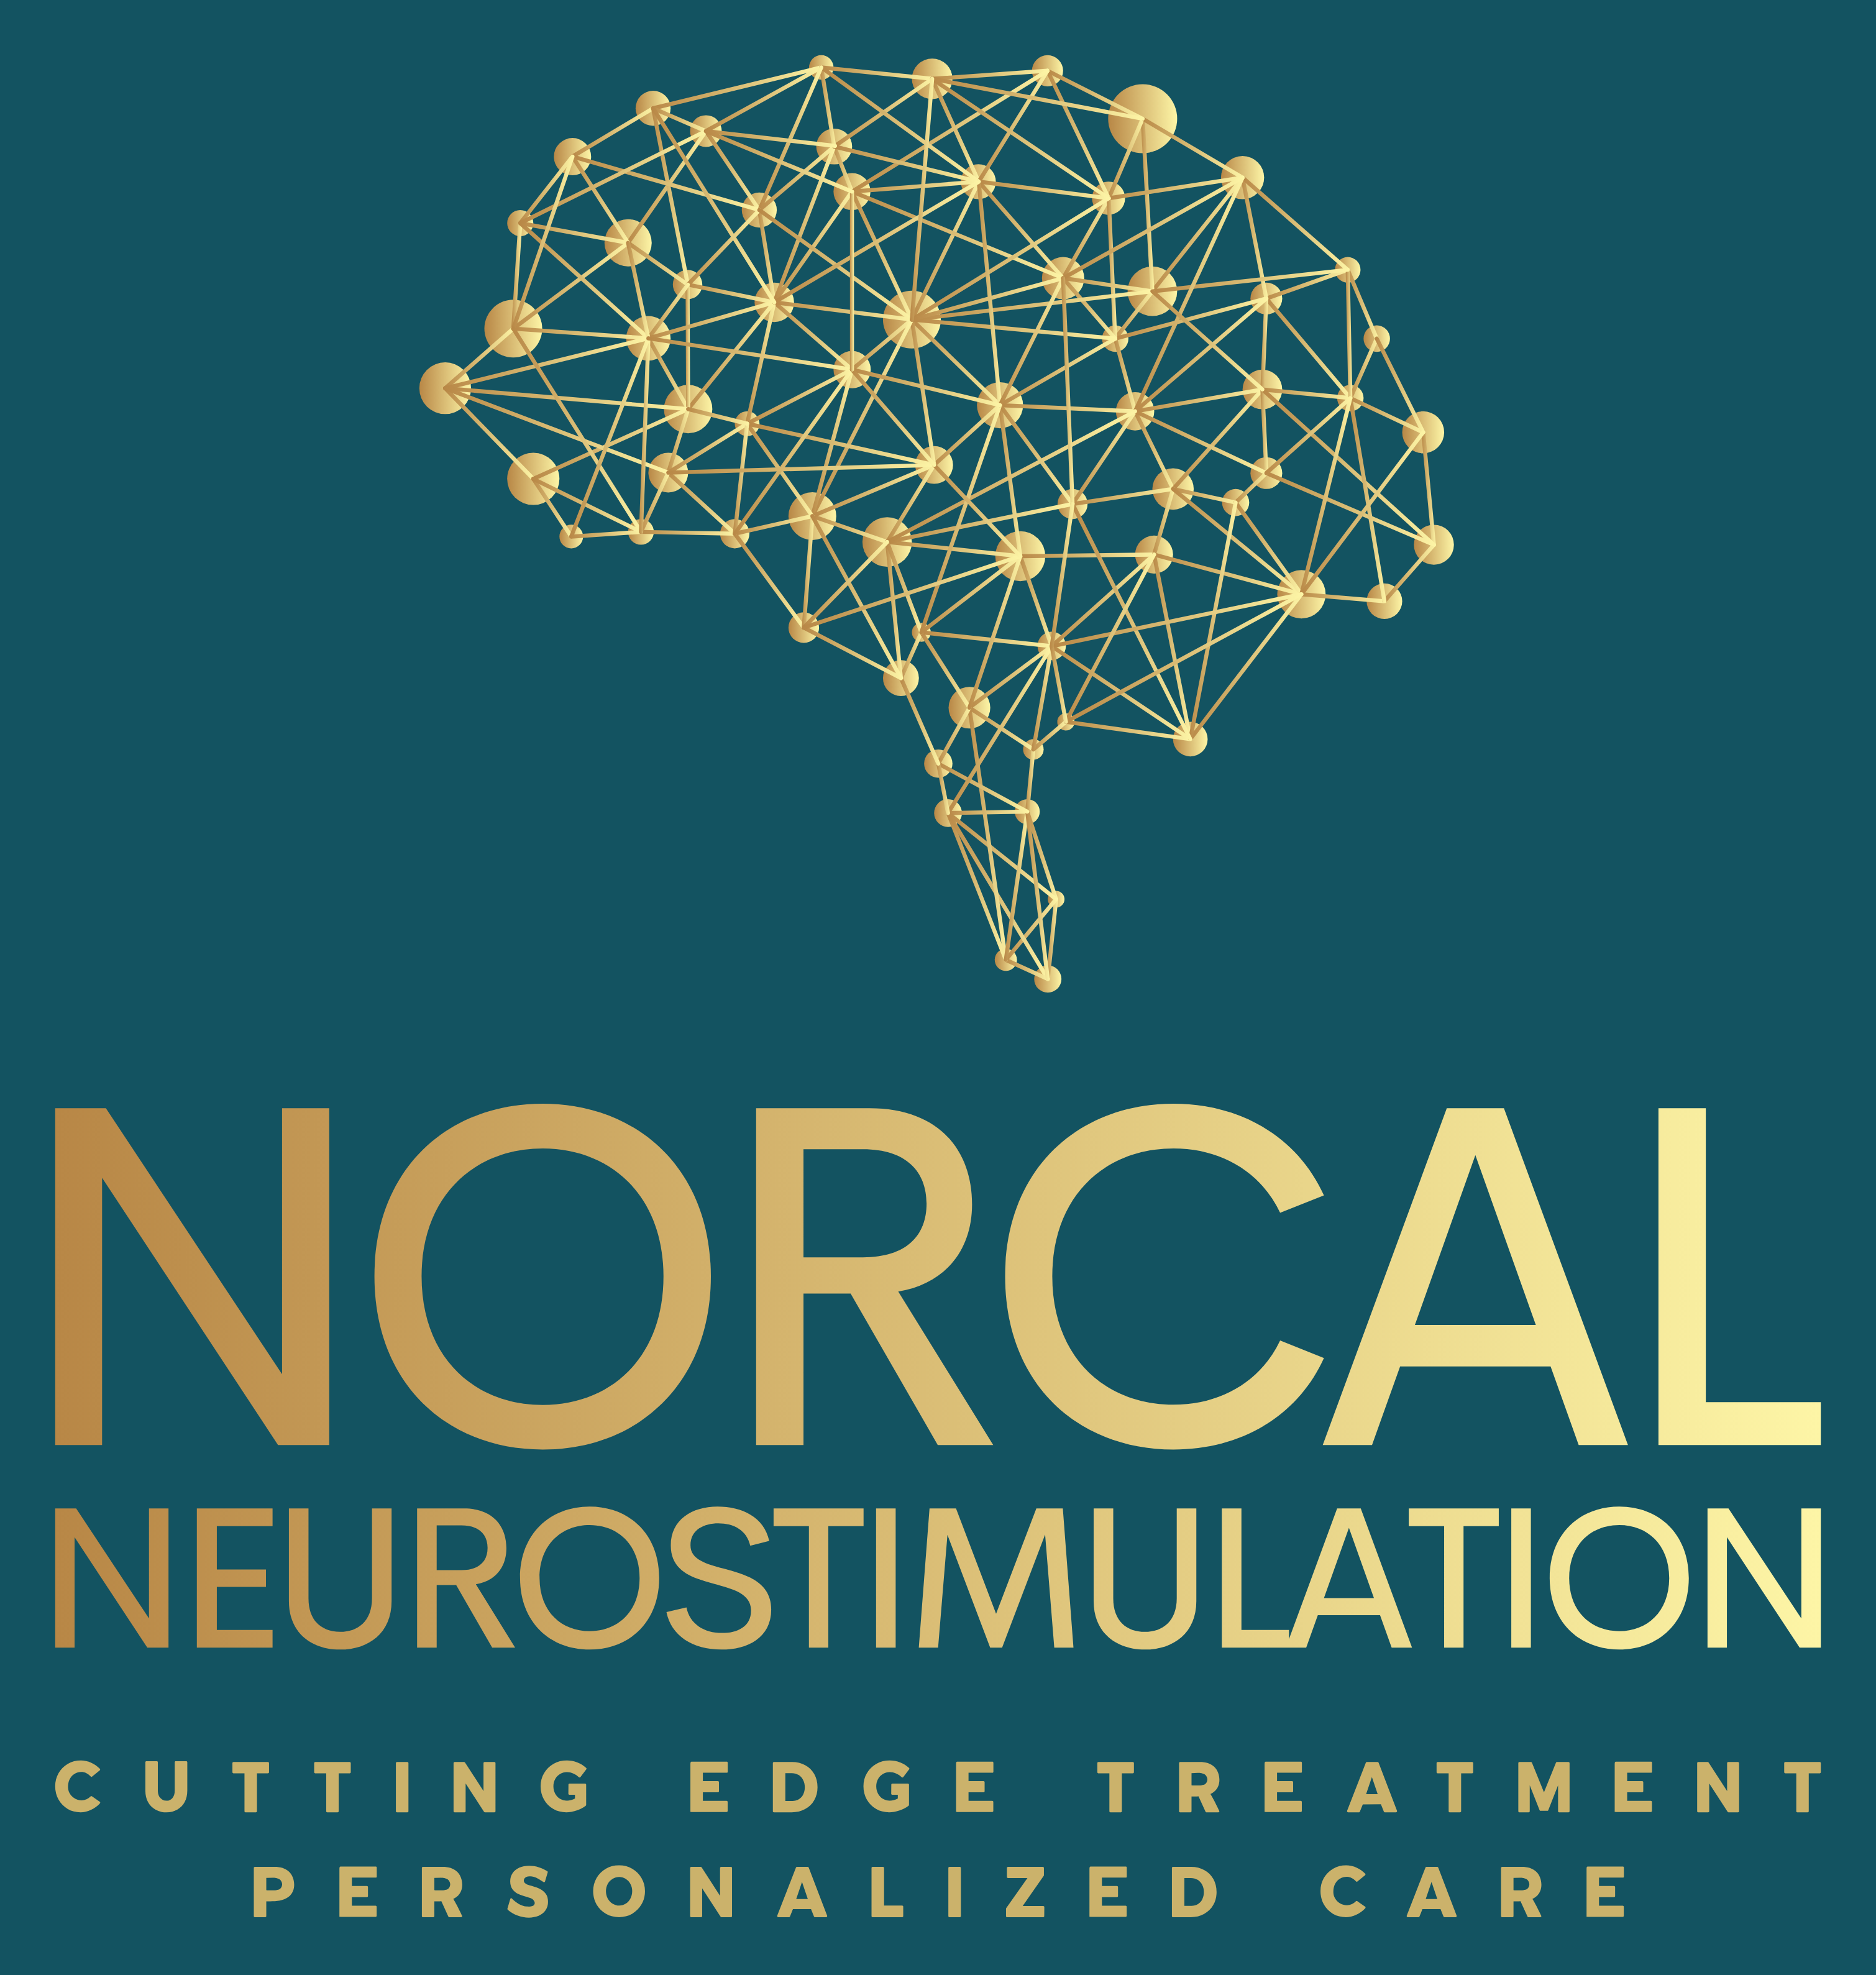 NorCal NeuroStimulation logo